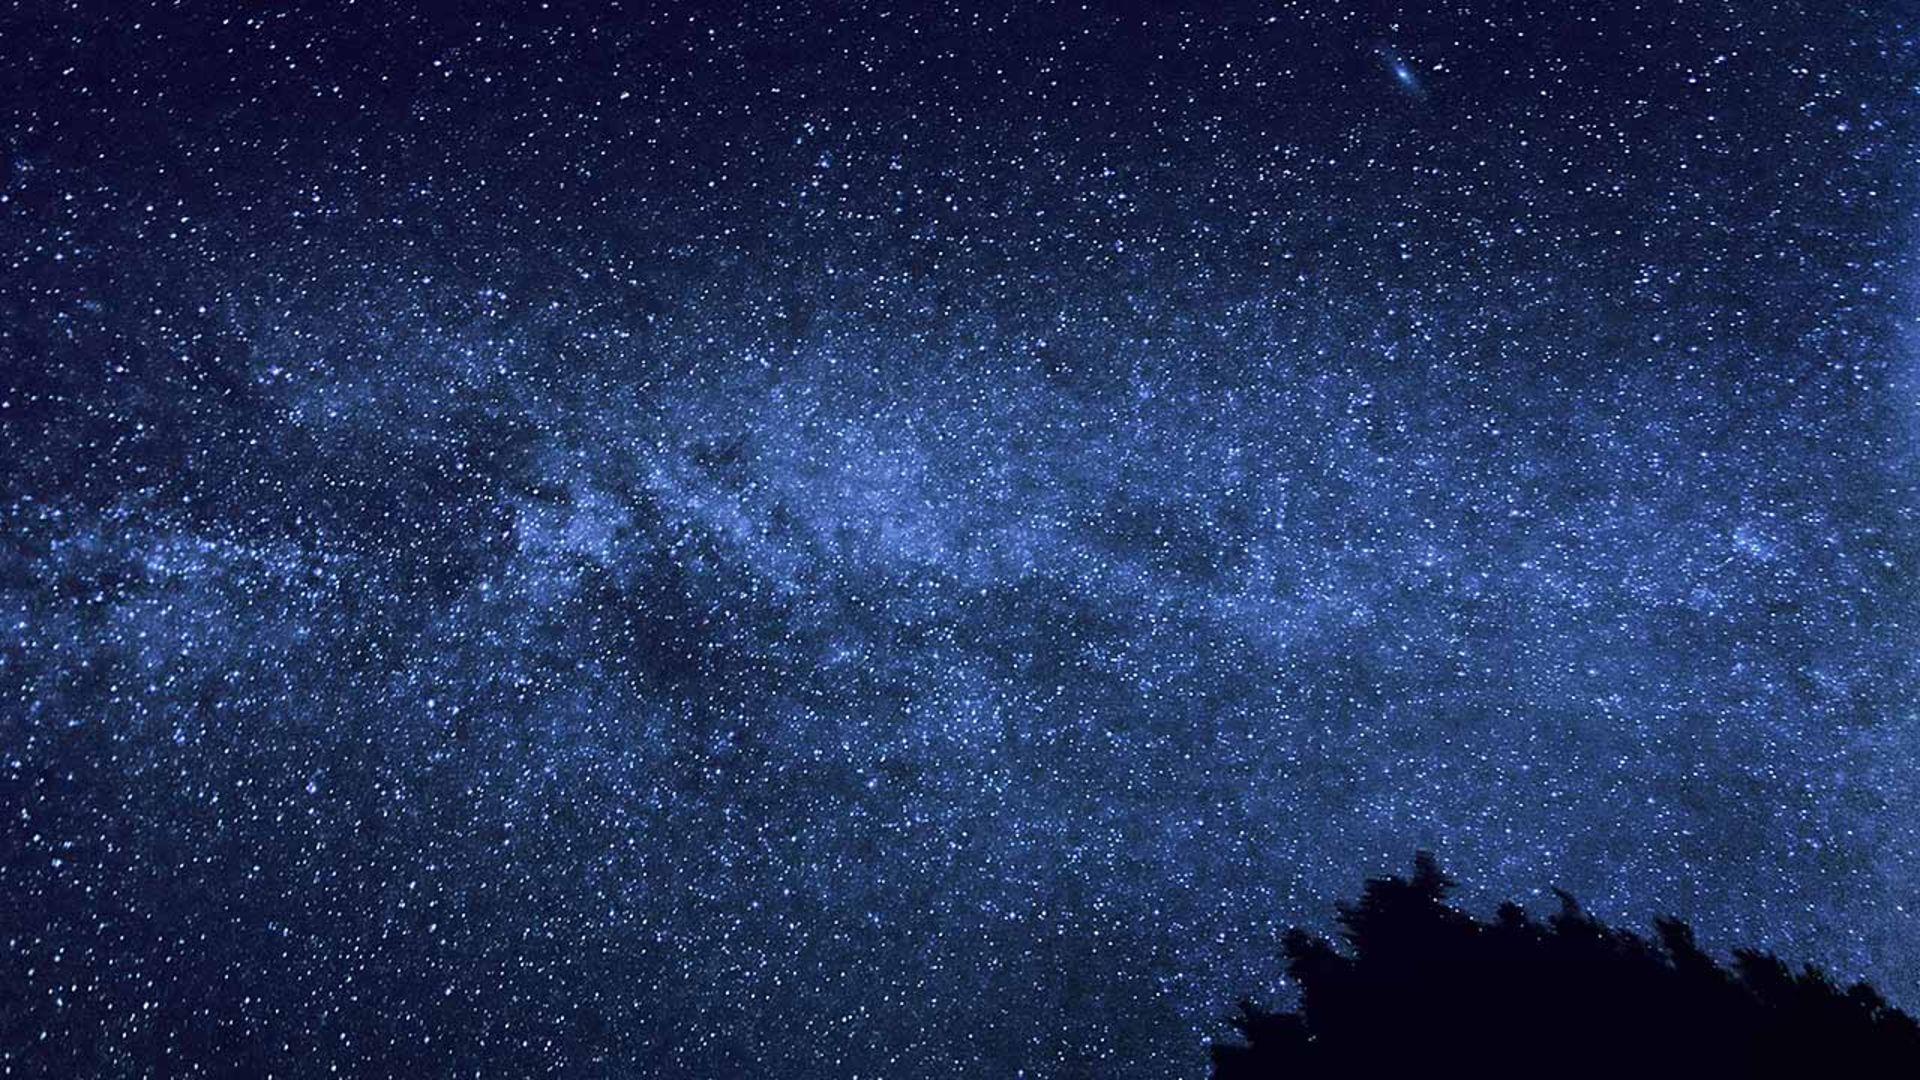 مرجع متخصصين ايران ستاره‌ها در آسمان تاريك شب